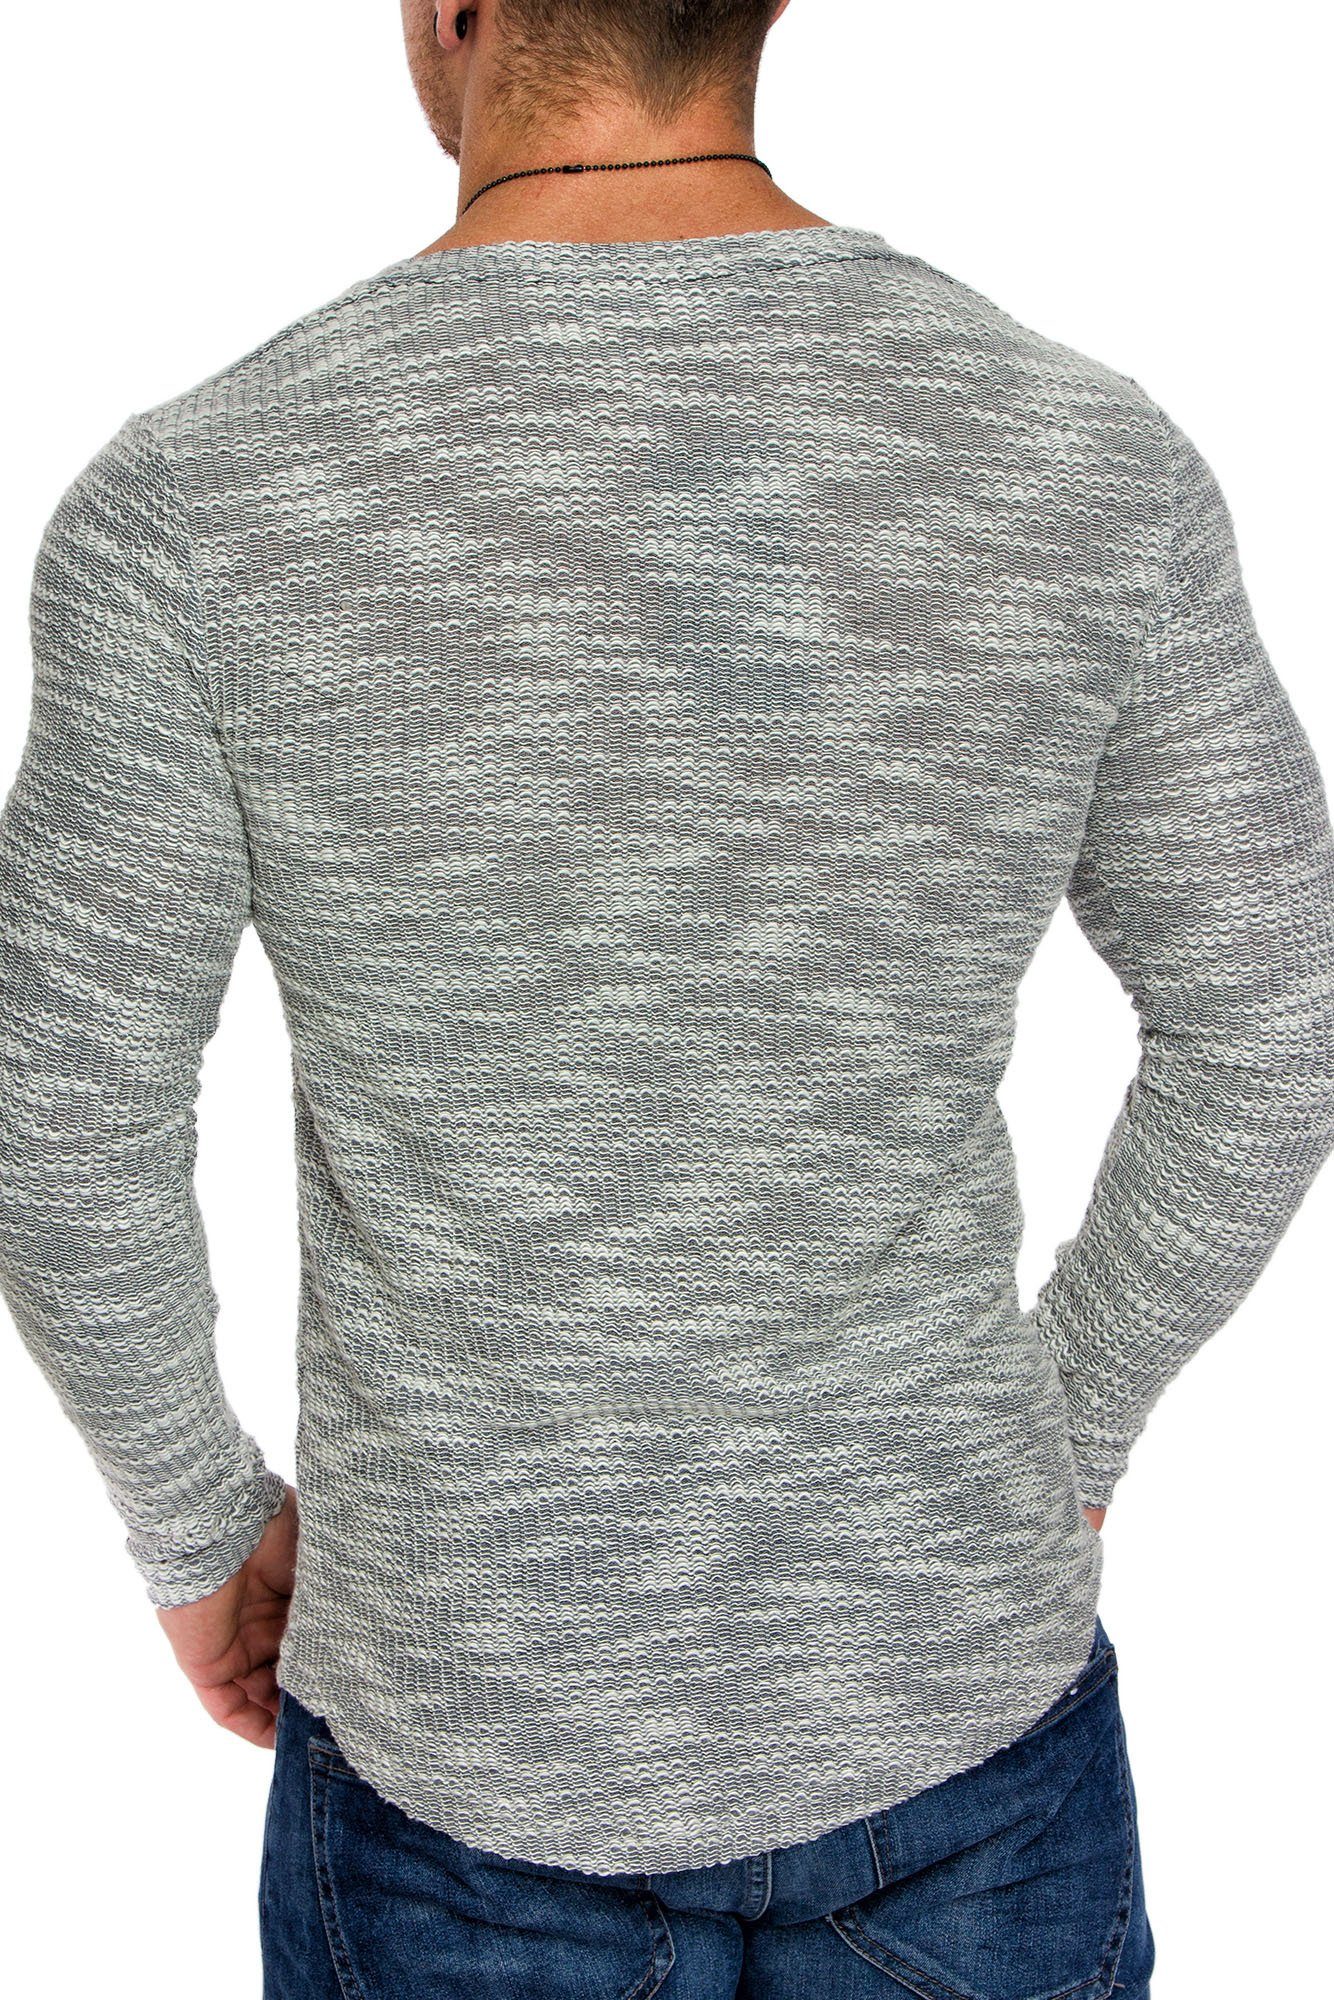 Sweatshirt NAMPA Amaci&Sons Grau Herren Sweatshirt Sweatshirt Pullover Hoodie mit Rundhalsausschnitt Rundhalsausschnitt Vintage